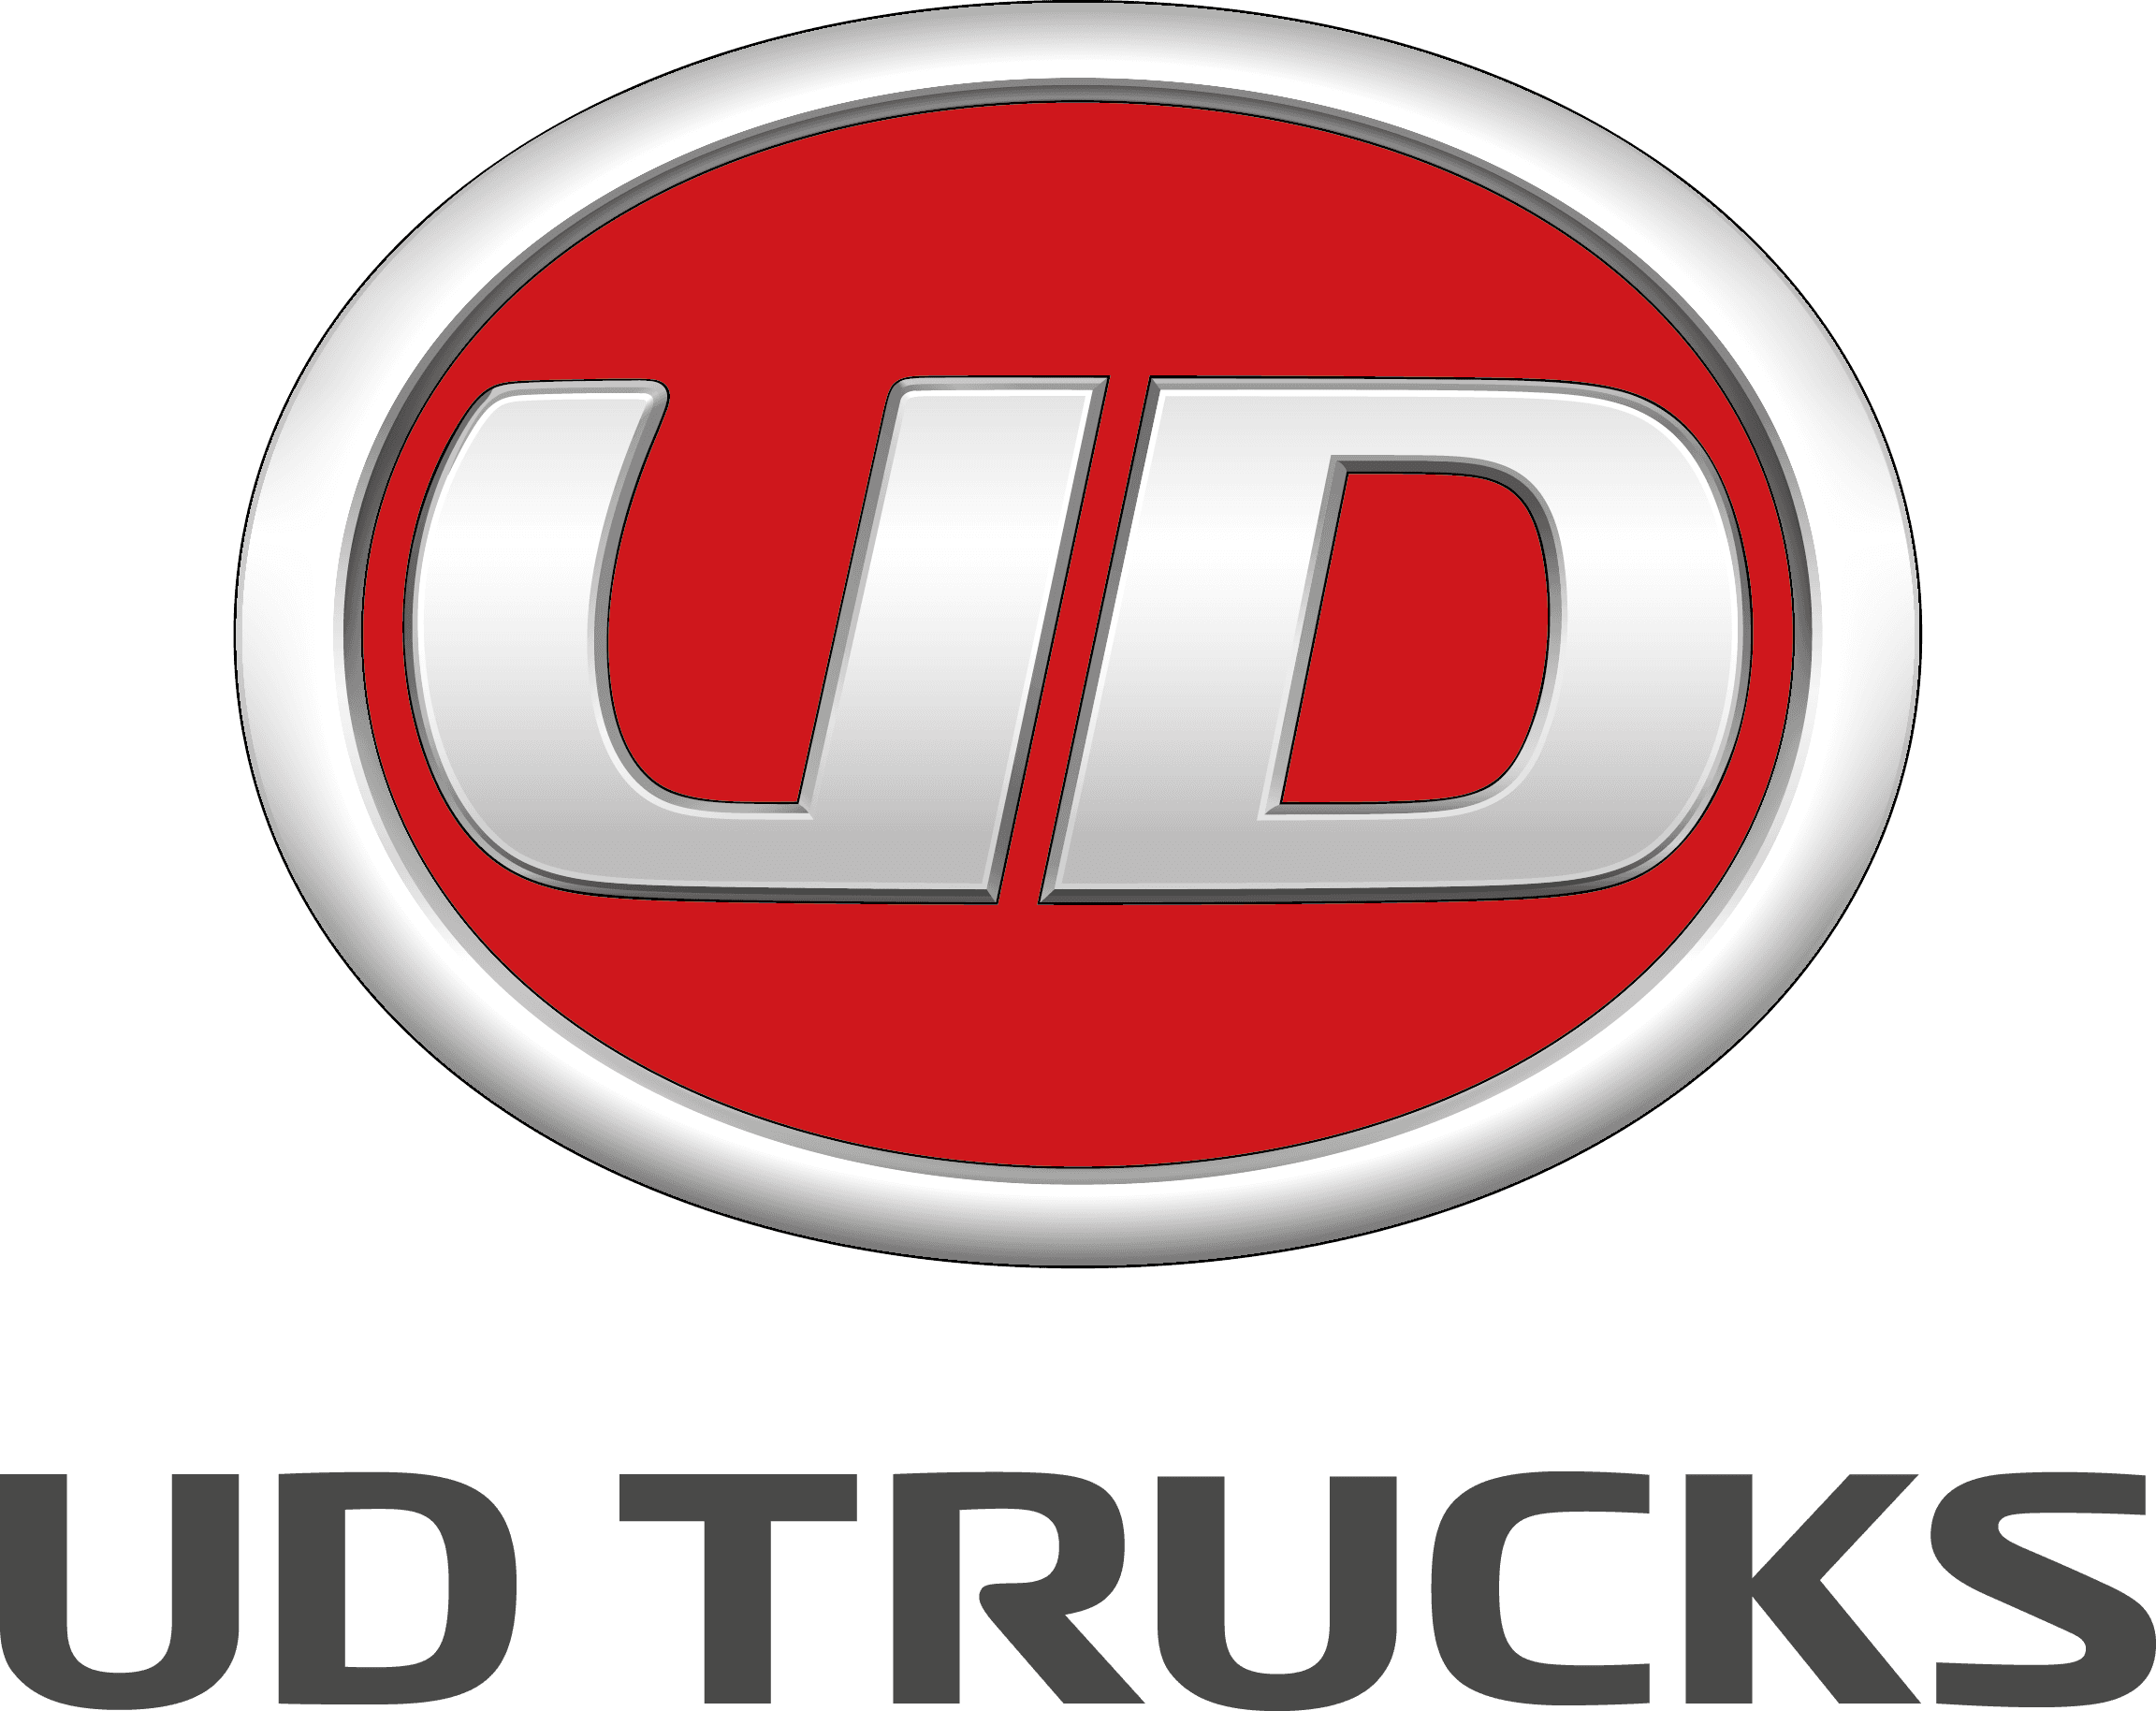 UD Trucks Logo png